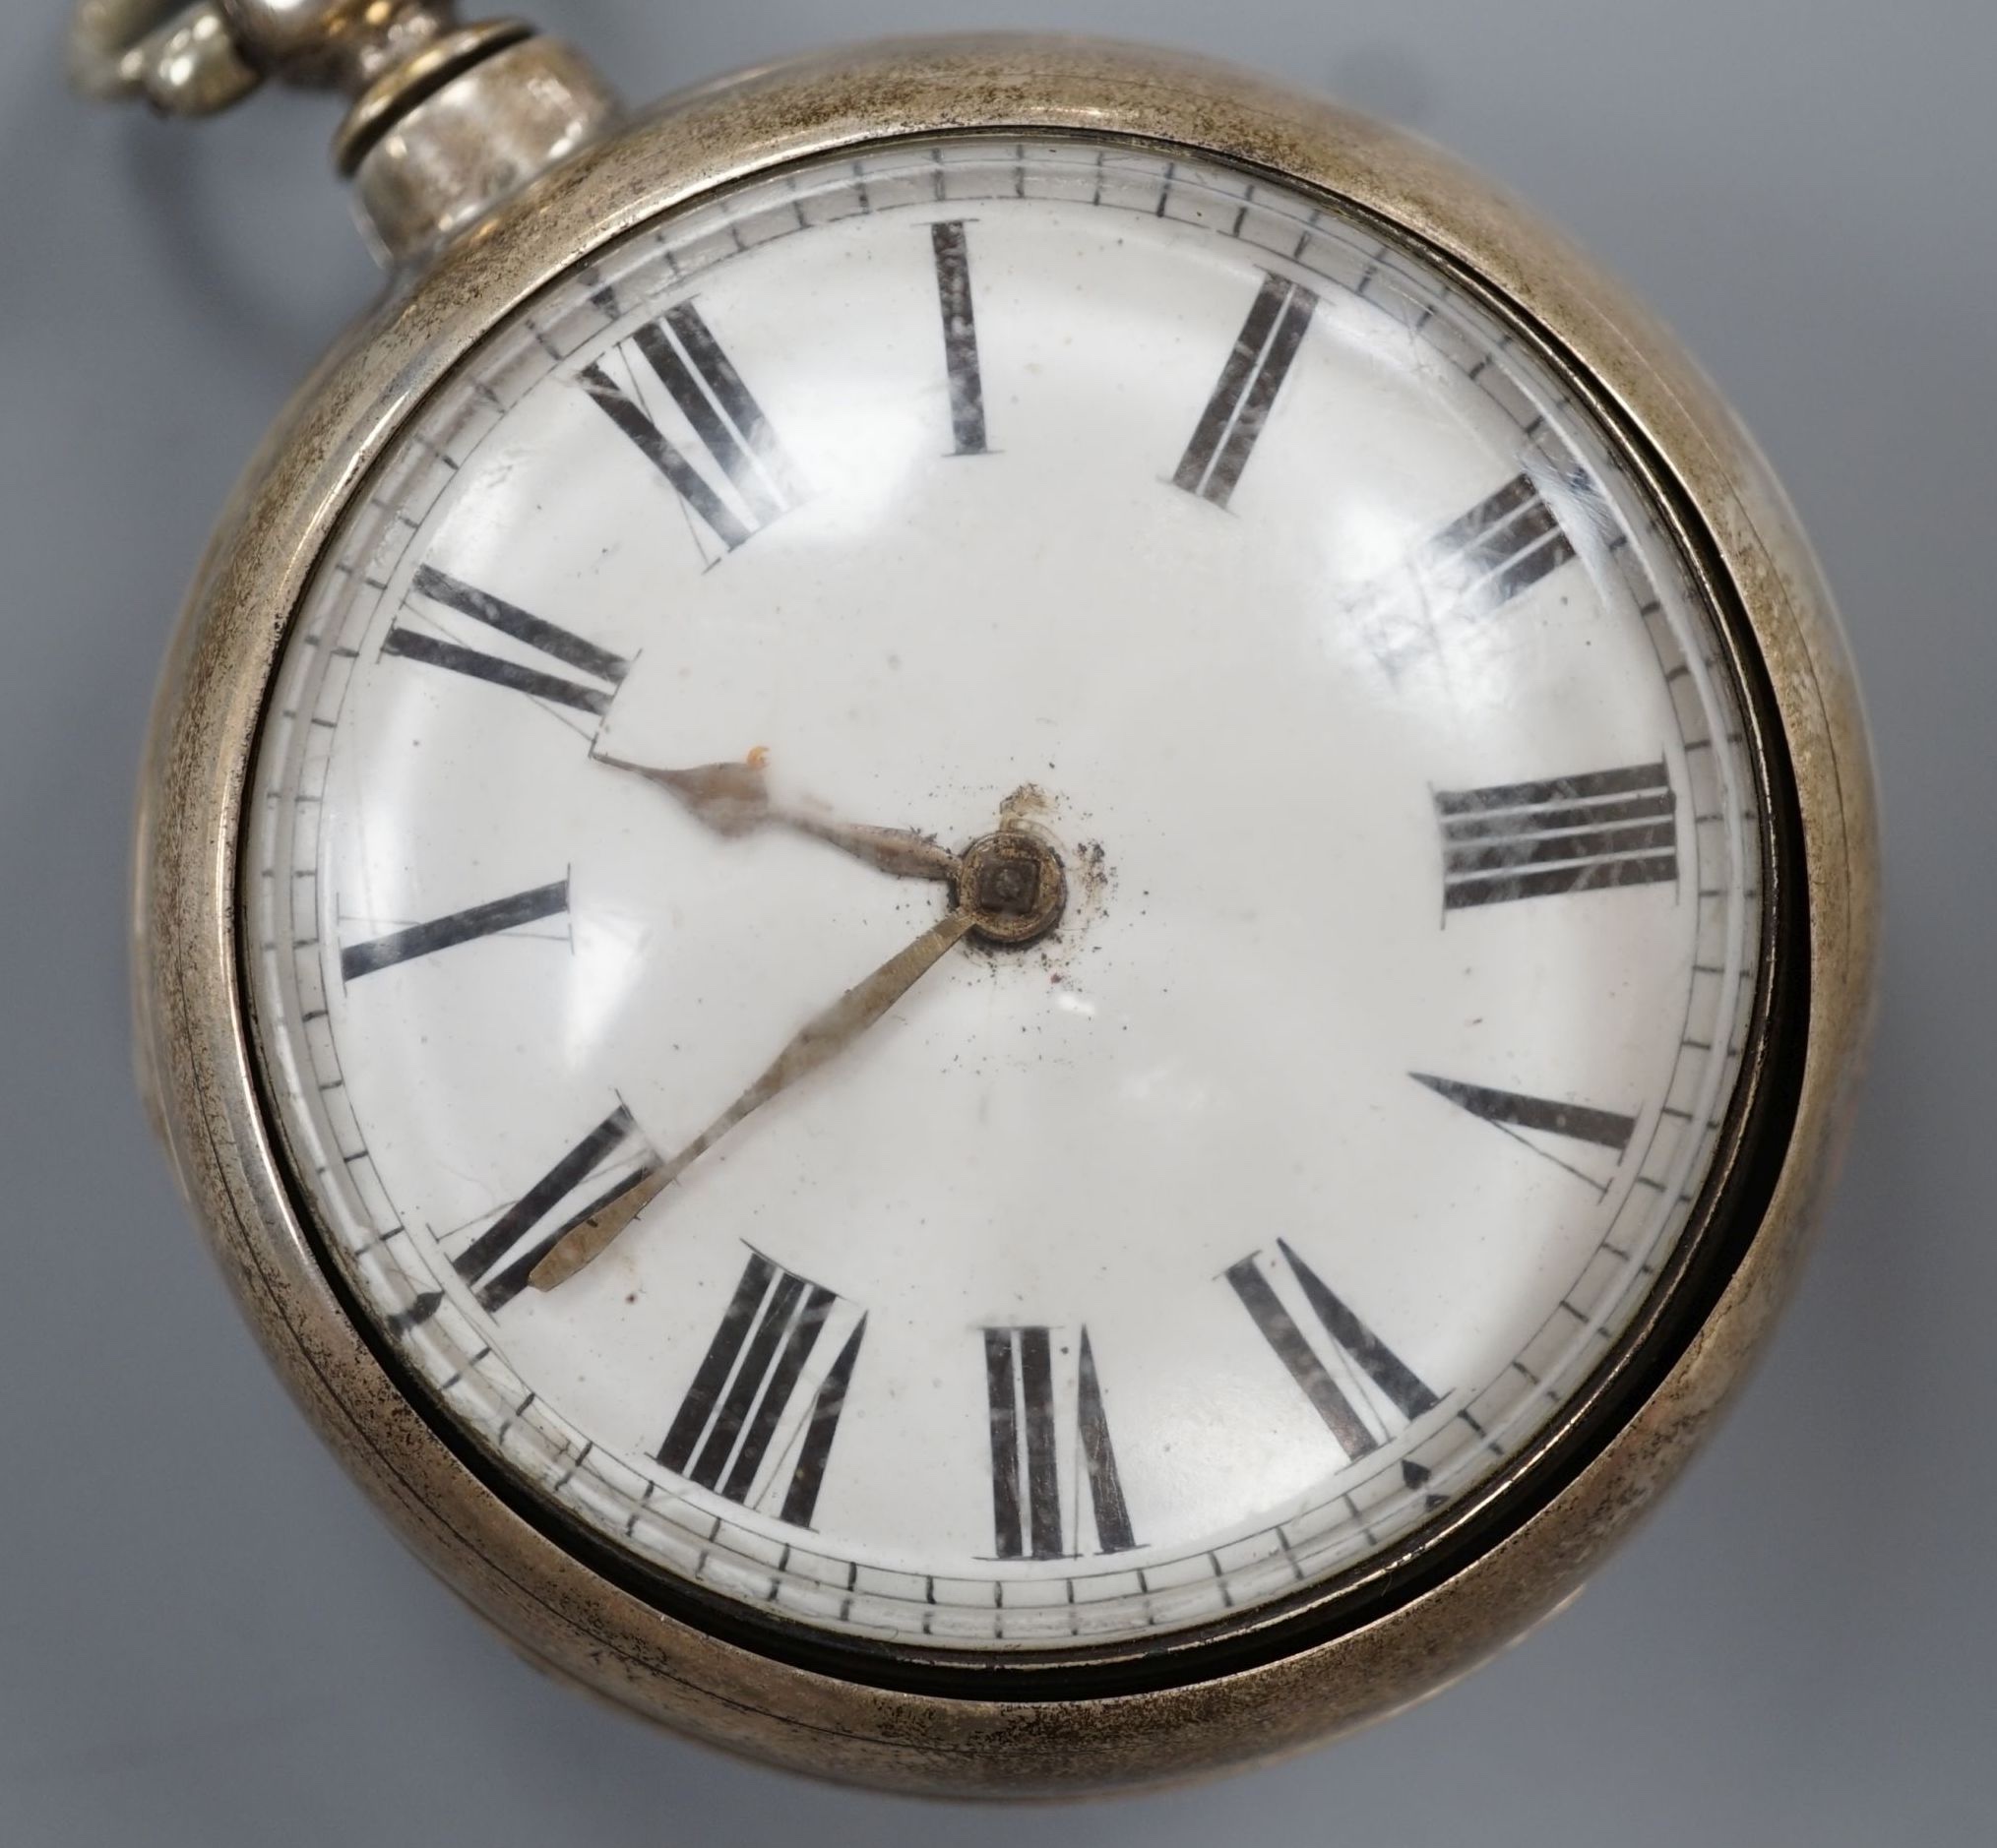 A Victorian silver pair case keywind verge pocket watch, by Adcock, Watton, case diameter, 55mm.